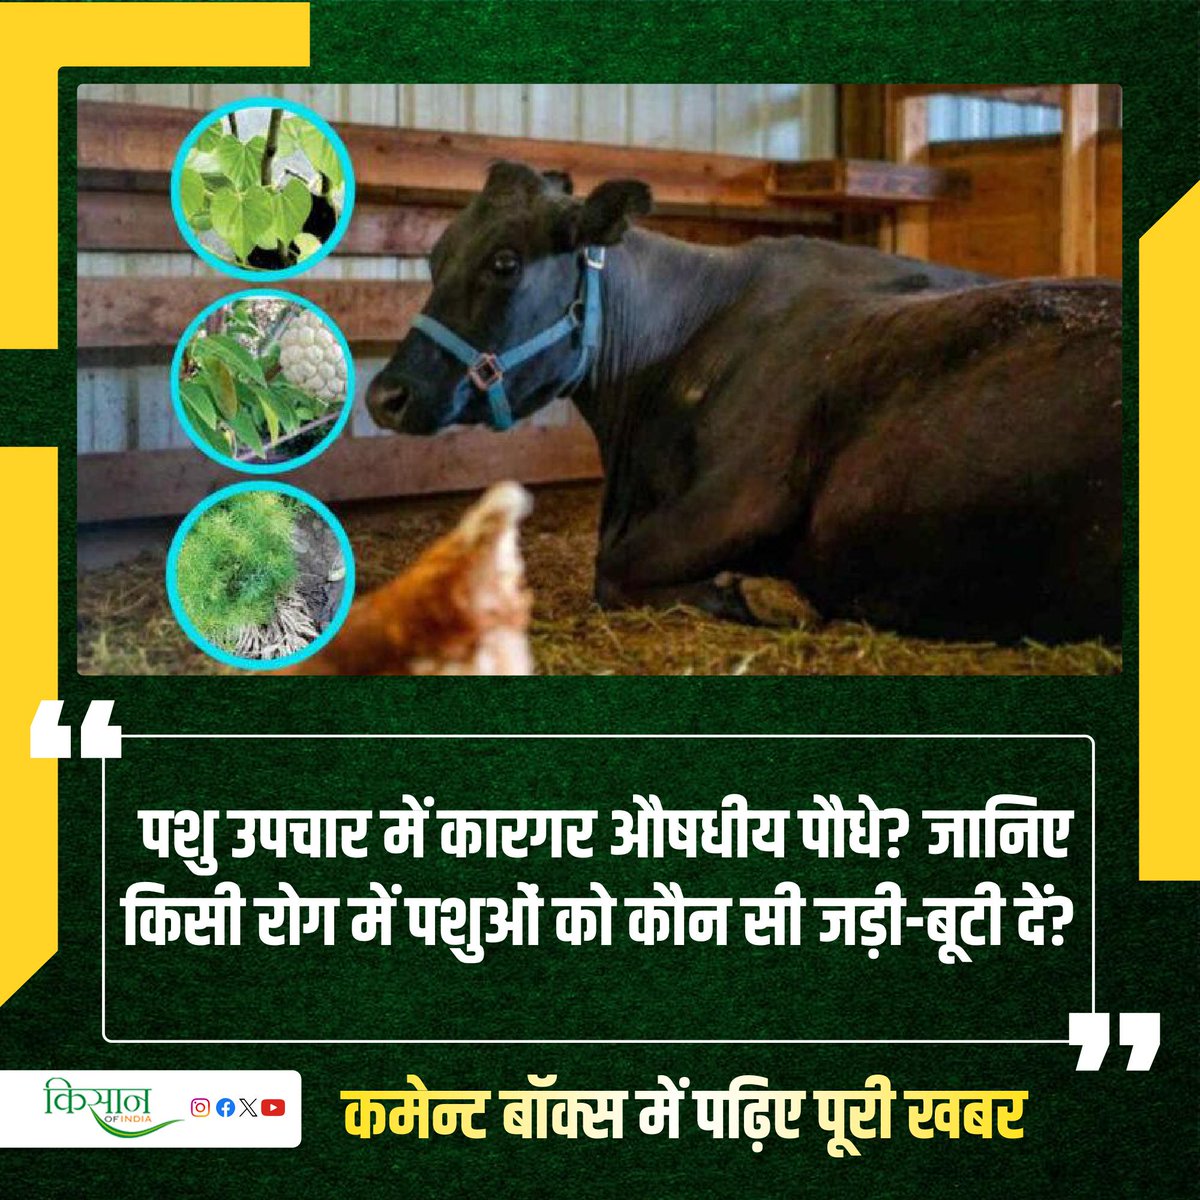 कृषि संस्थान द्वारा सुझाए गए औषधीय पौधों द्वारा कैसे कर सकते हैं पशुओं का उपचार?

#KisanOfIndia #Agriculture #Agri #Viral #AnimalHusbandry #AnimalFeed #MedicinalPlants